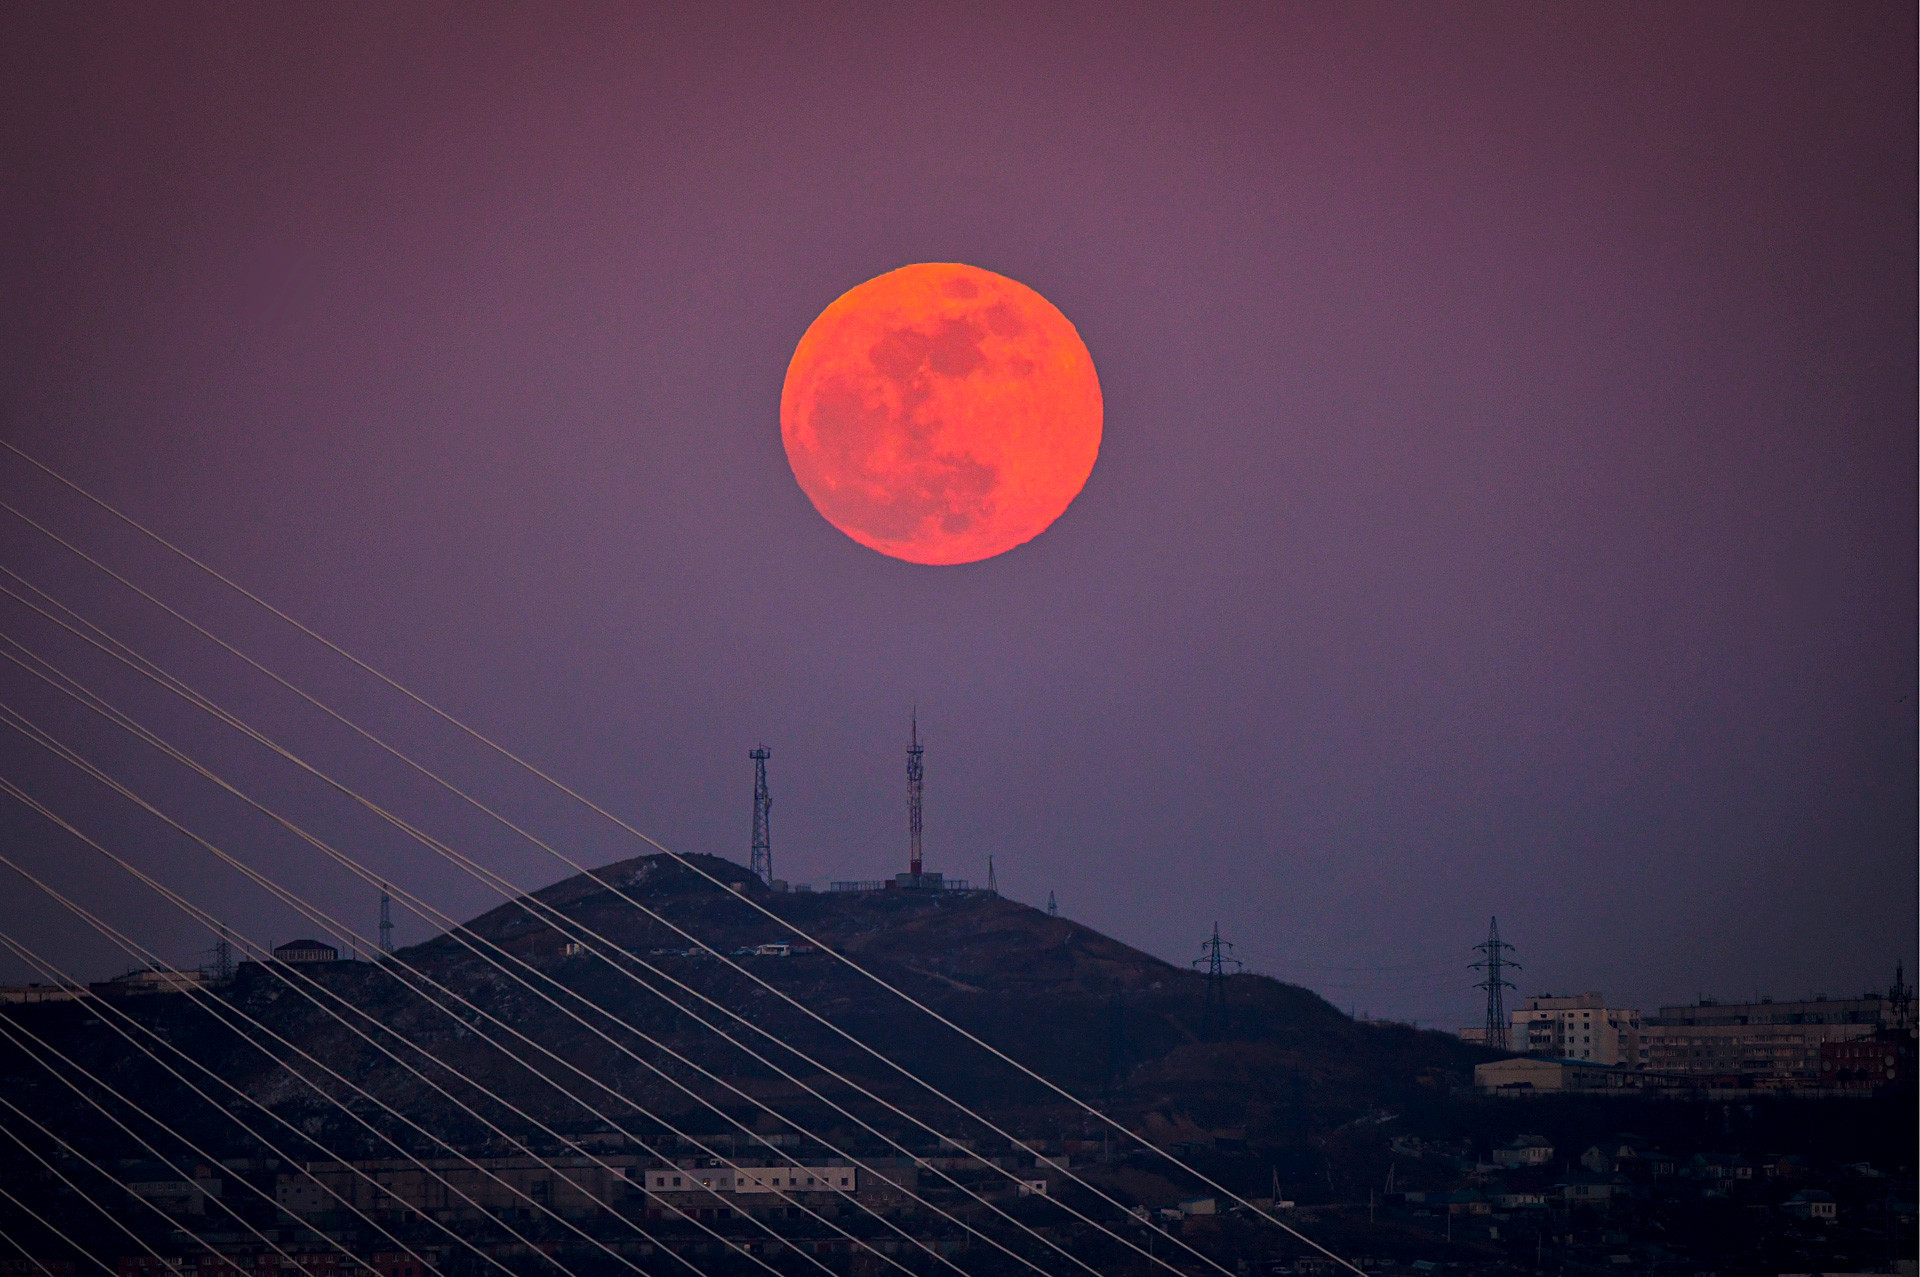 Vladivostok, Rusia: Bulan purnama merah terbit di atas bukit kota Vladivostok di Timur Jauh Rusia, sementara bulan biru, bulan super, dan gerhana bulan total terjadi di saat yang sama.